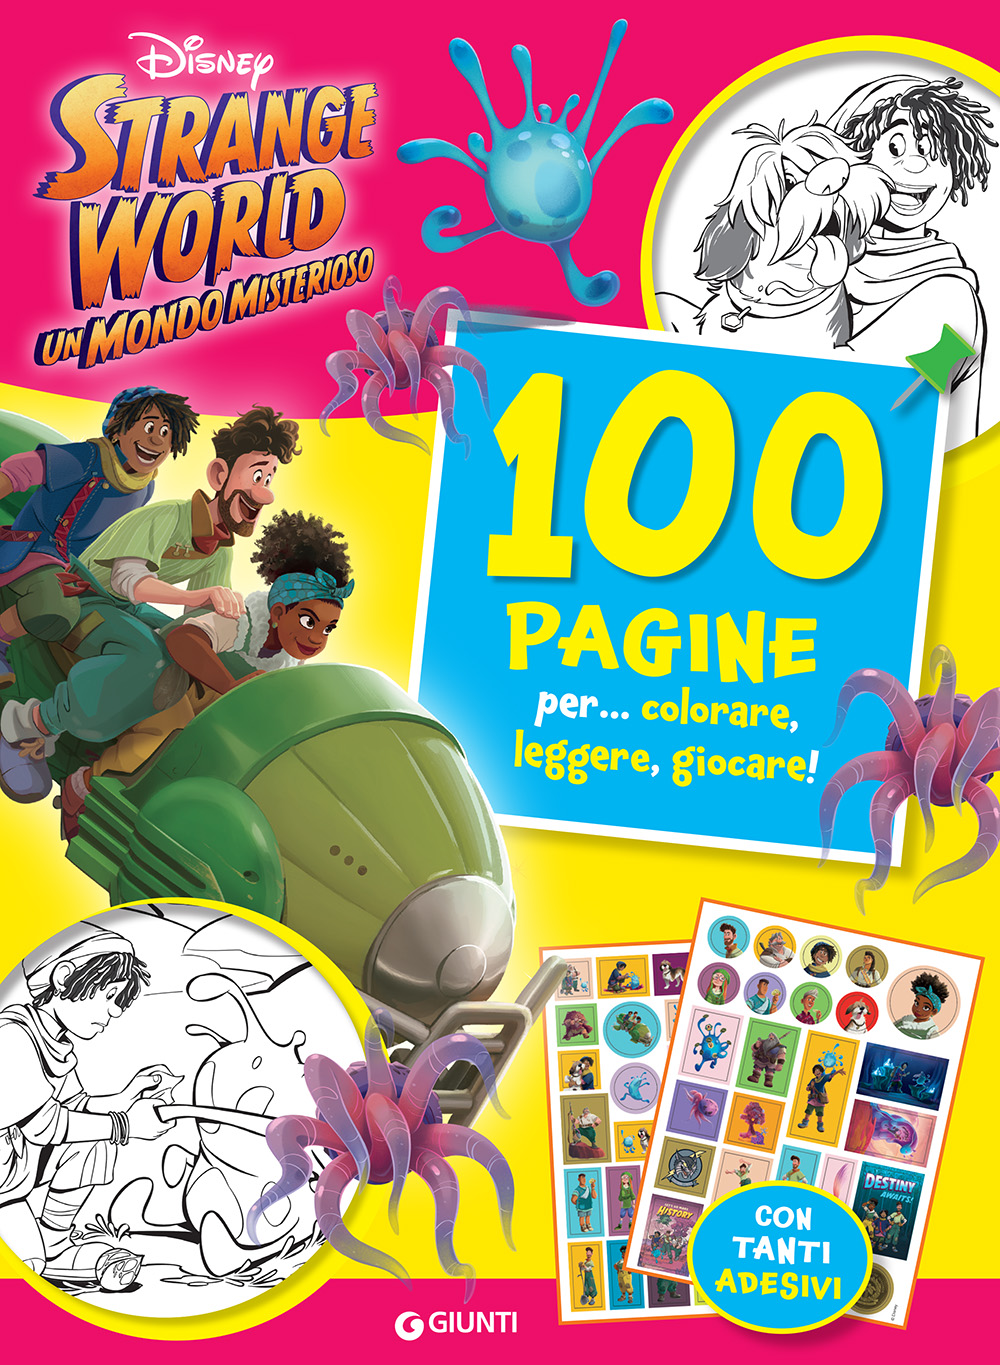 Strange World 100 Pagine per colorare, leggere, giocare